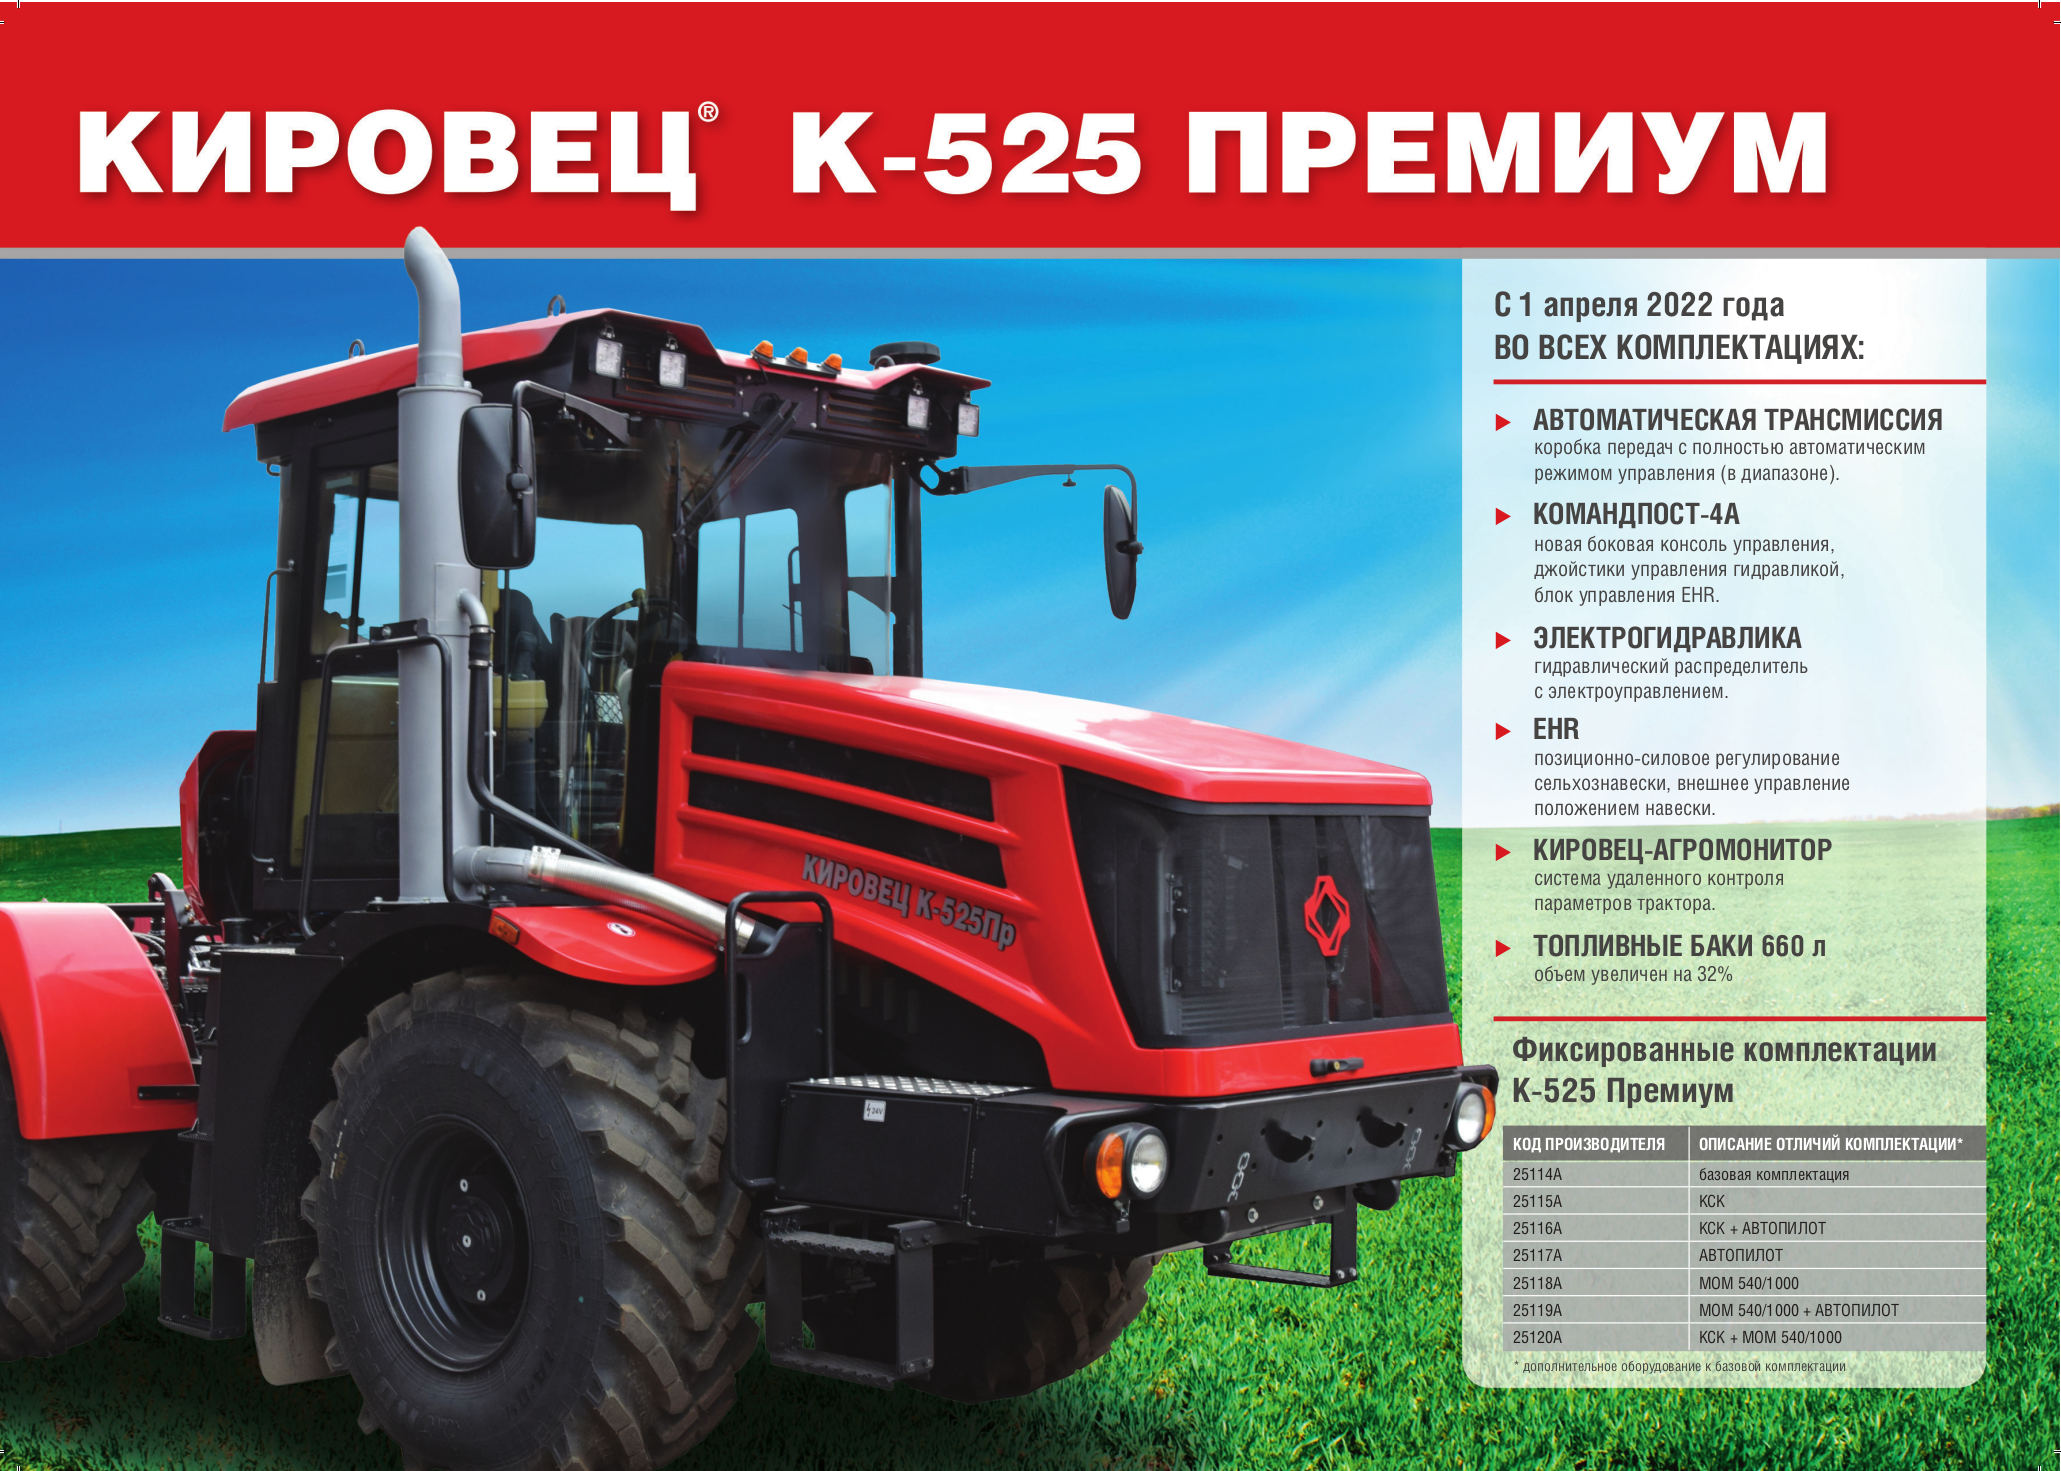 Новый Кировец К-525 пятого тягового класса (ЯМЗ 250 л.с.)